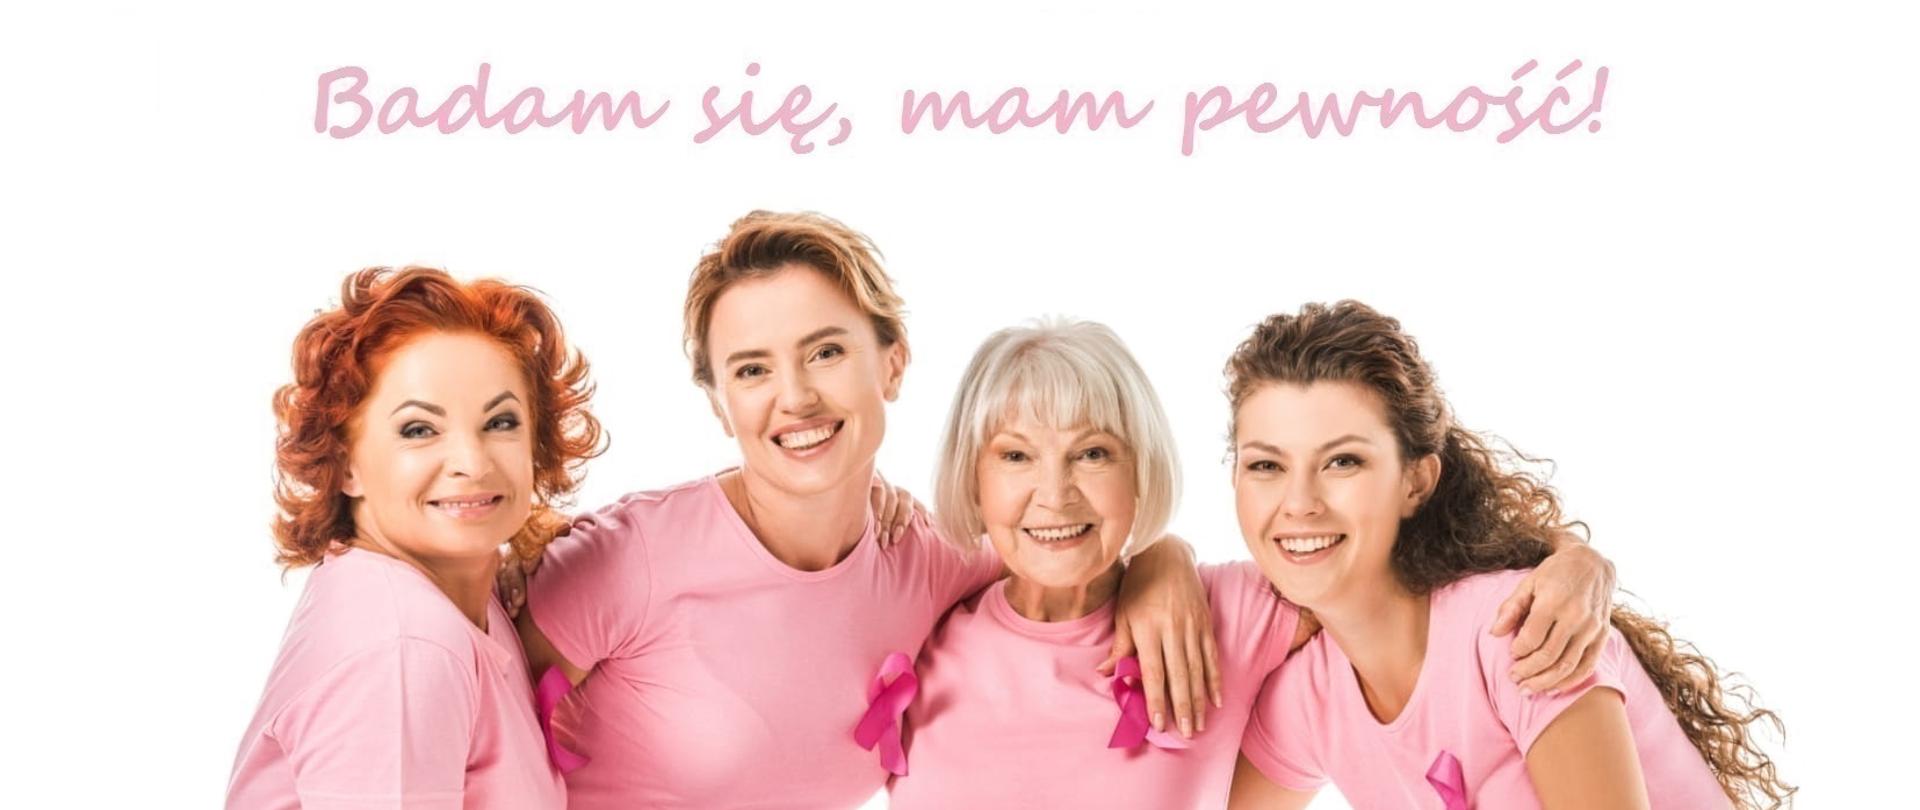 grafika przedstawia plakat z informacjami dotyczącymi bezpłatnych badań mammograficznych dla kobiet